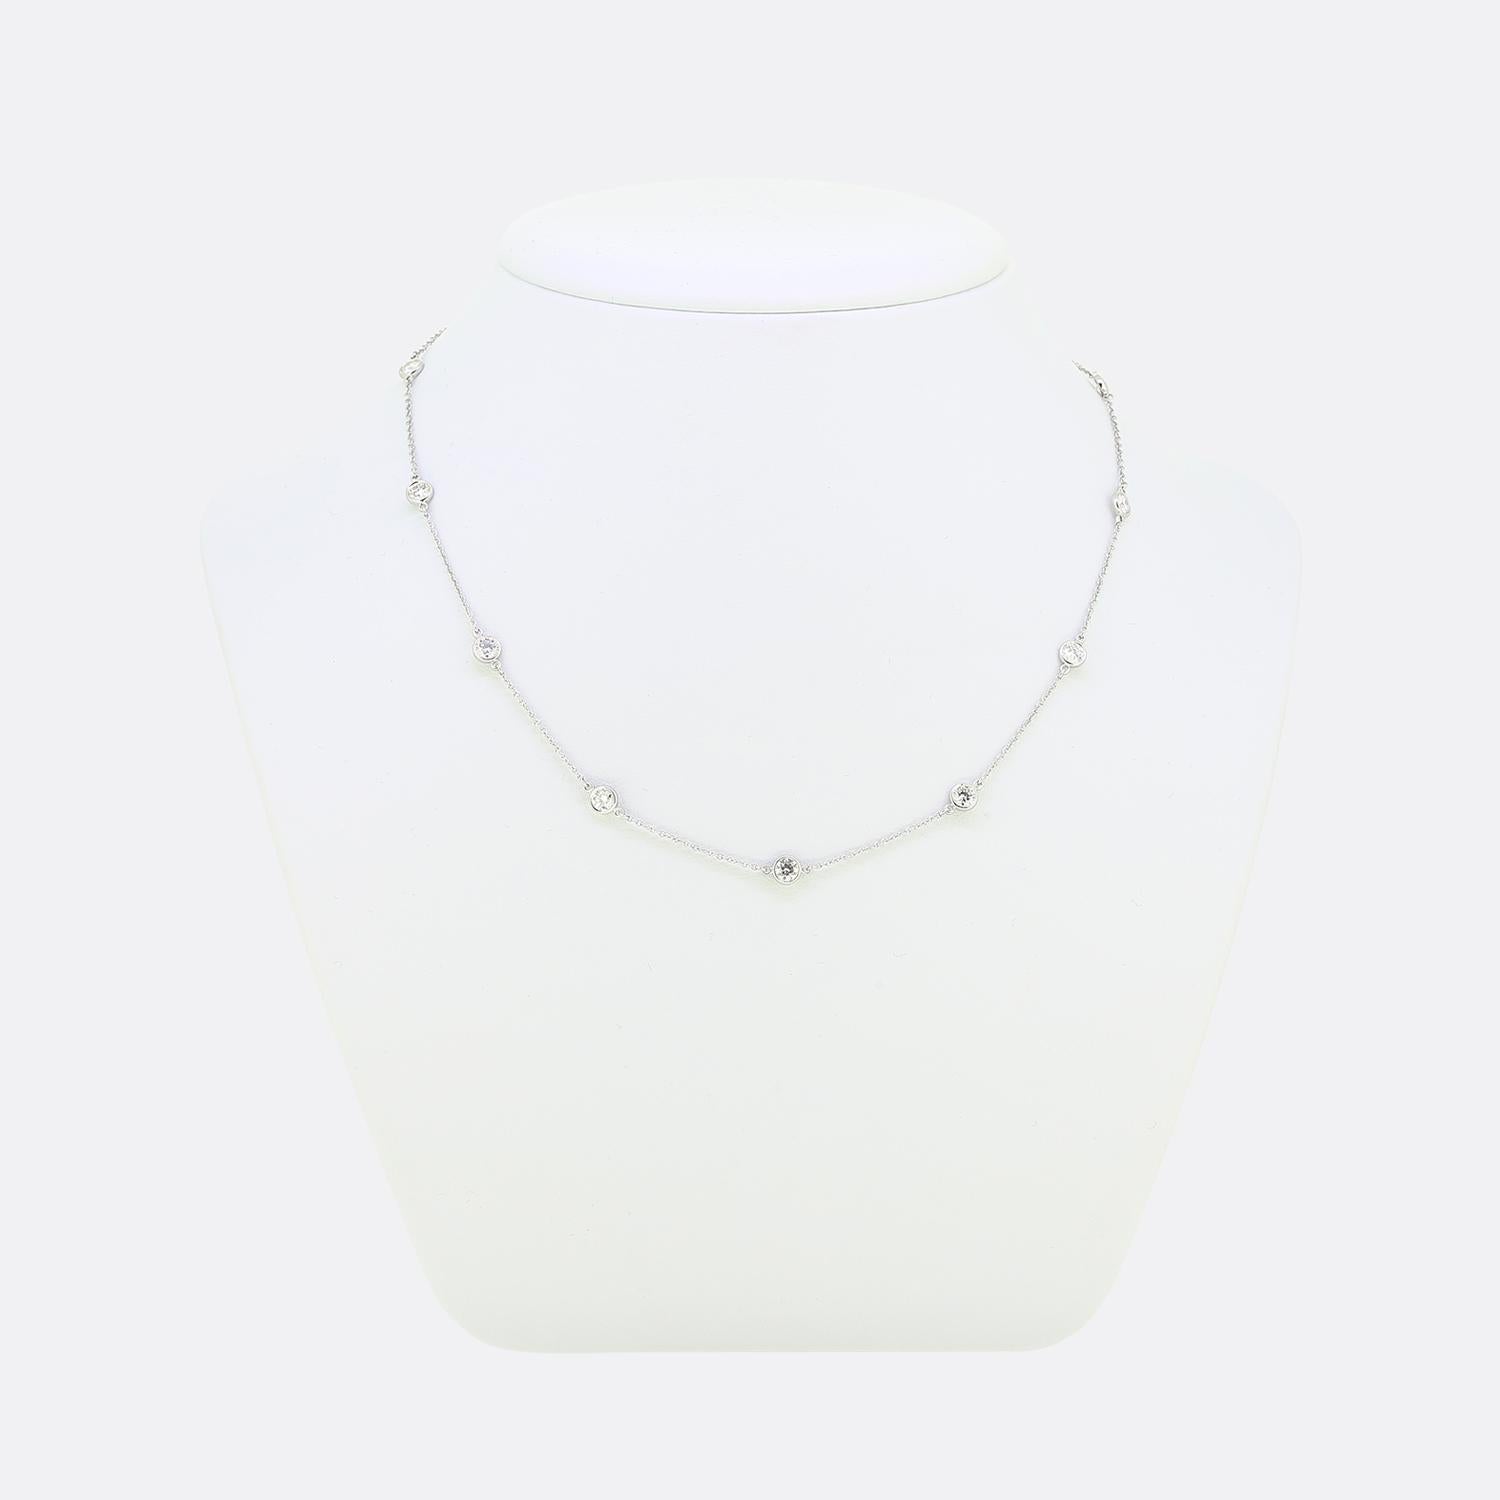 Nous avons ici un magnifique collier du créateur de bijoux de renommée mondiale, Tiffany & Co. Une fine chaîne en platine de type belcher accueille 11 diamants ronds de taille brillant, répartis uniformément et sertis individuellement par